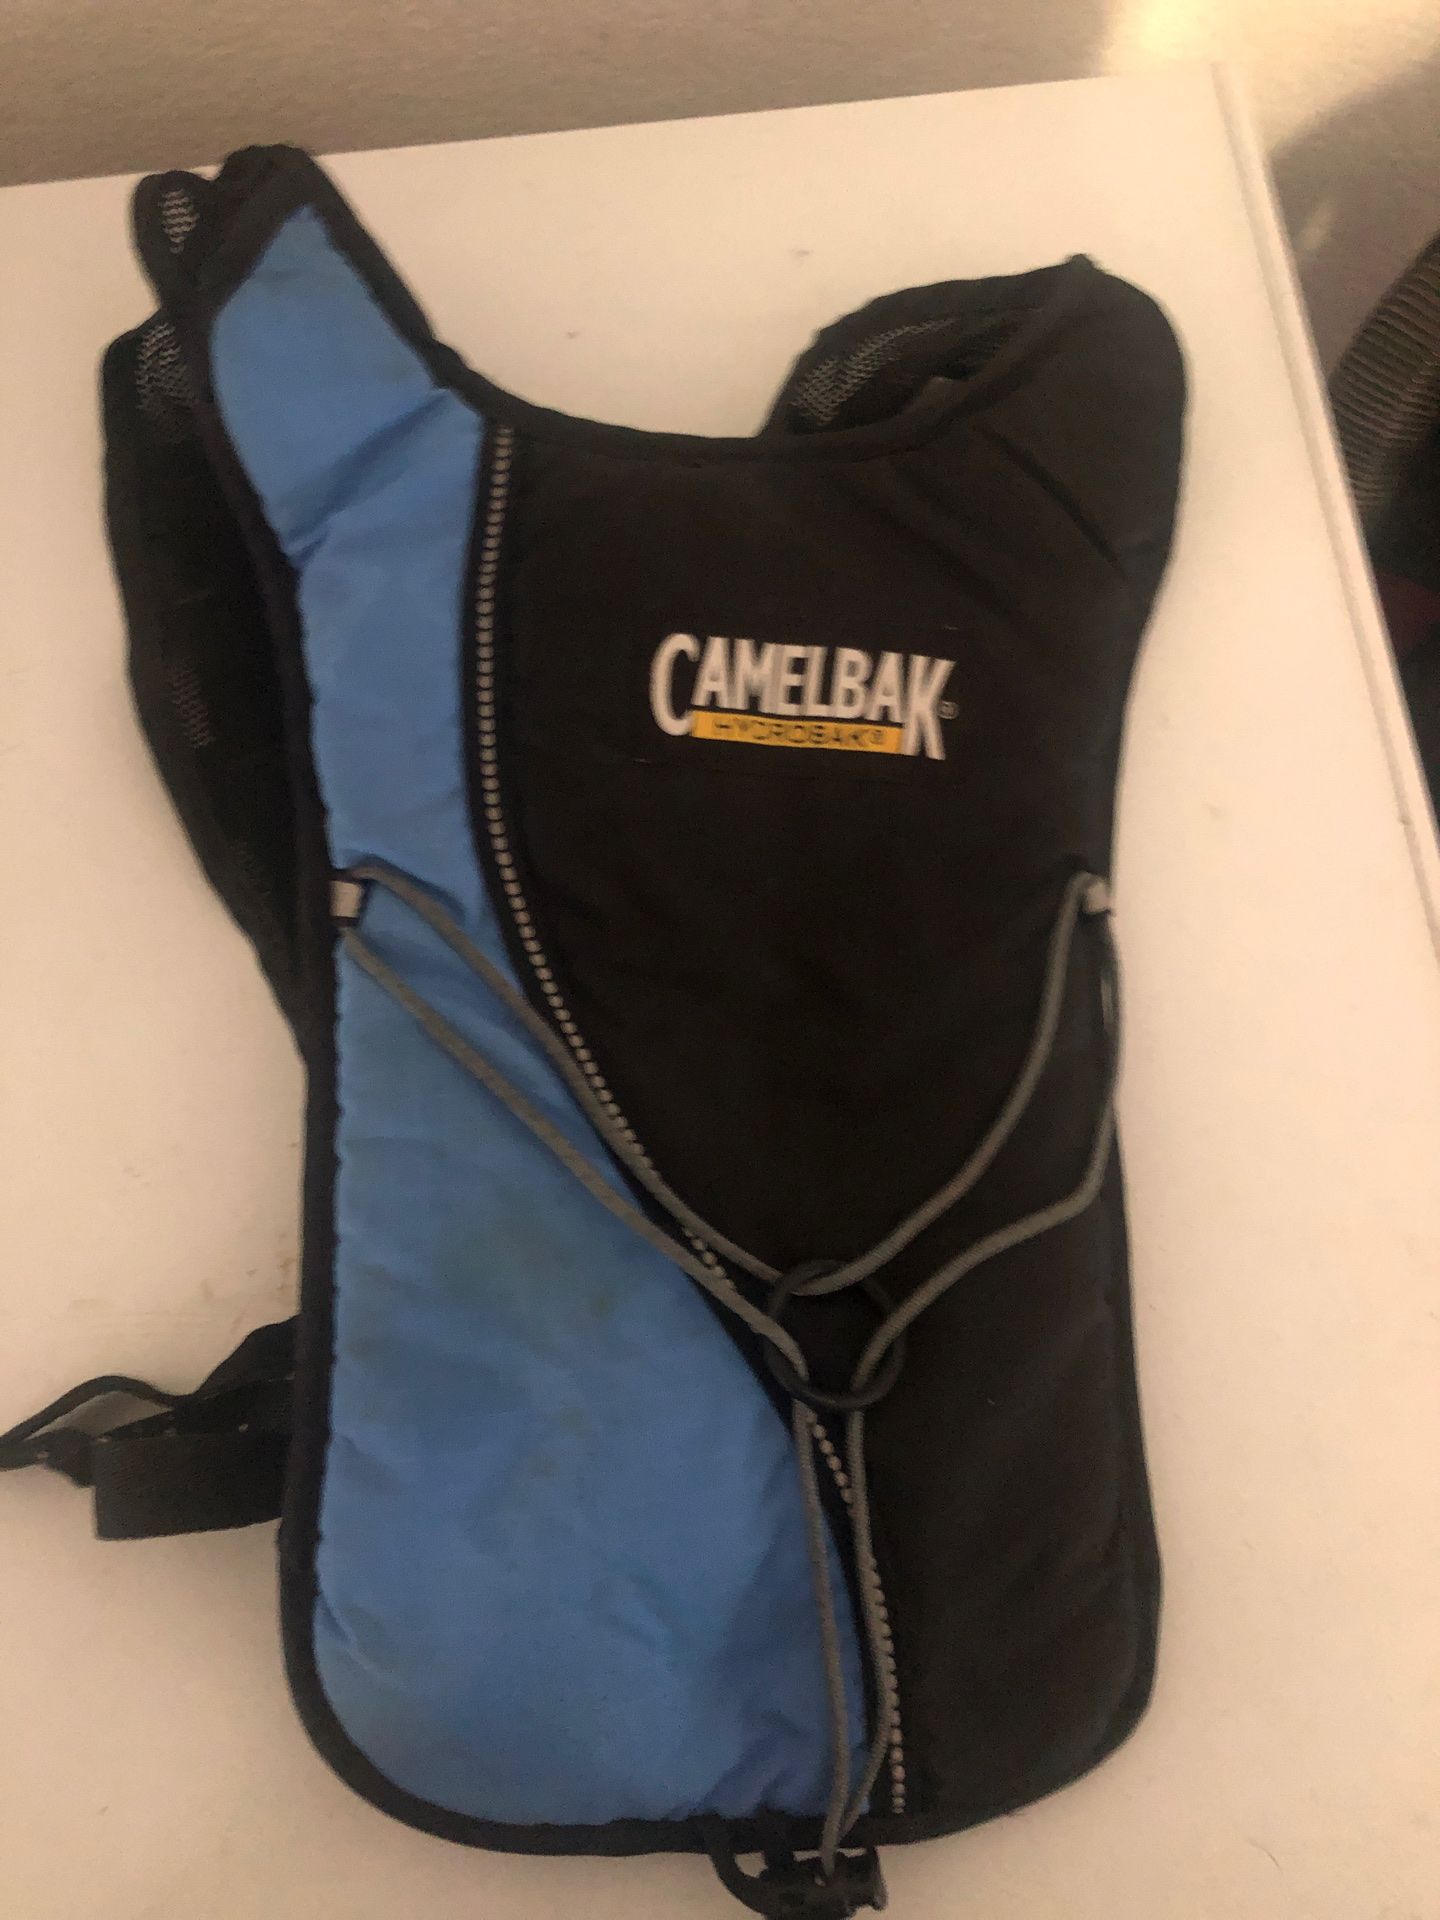 Camelbak backpack